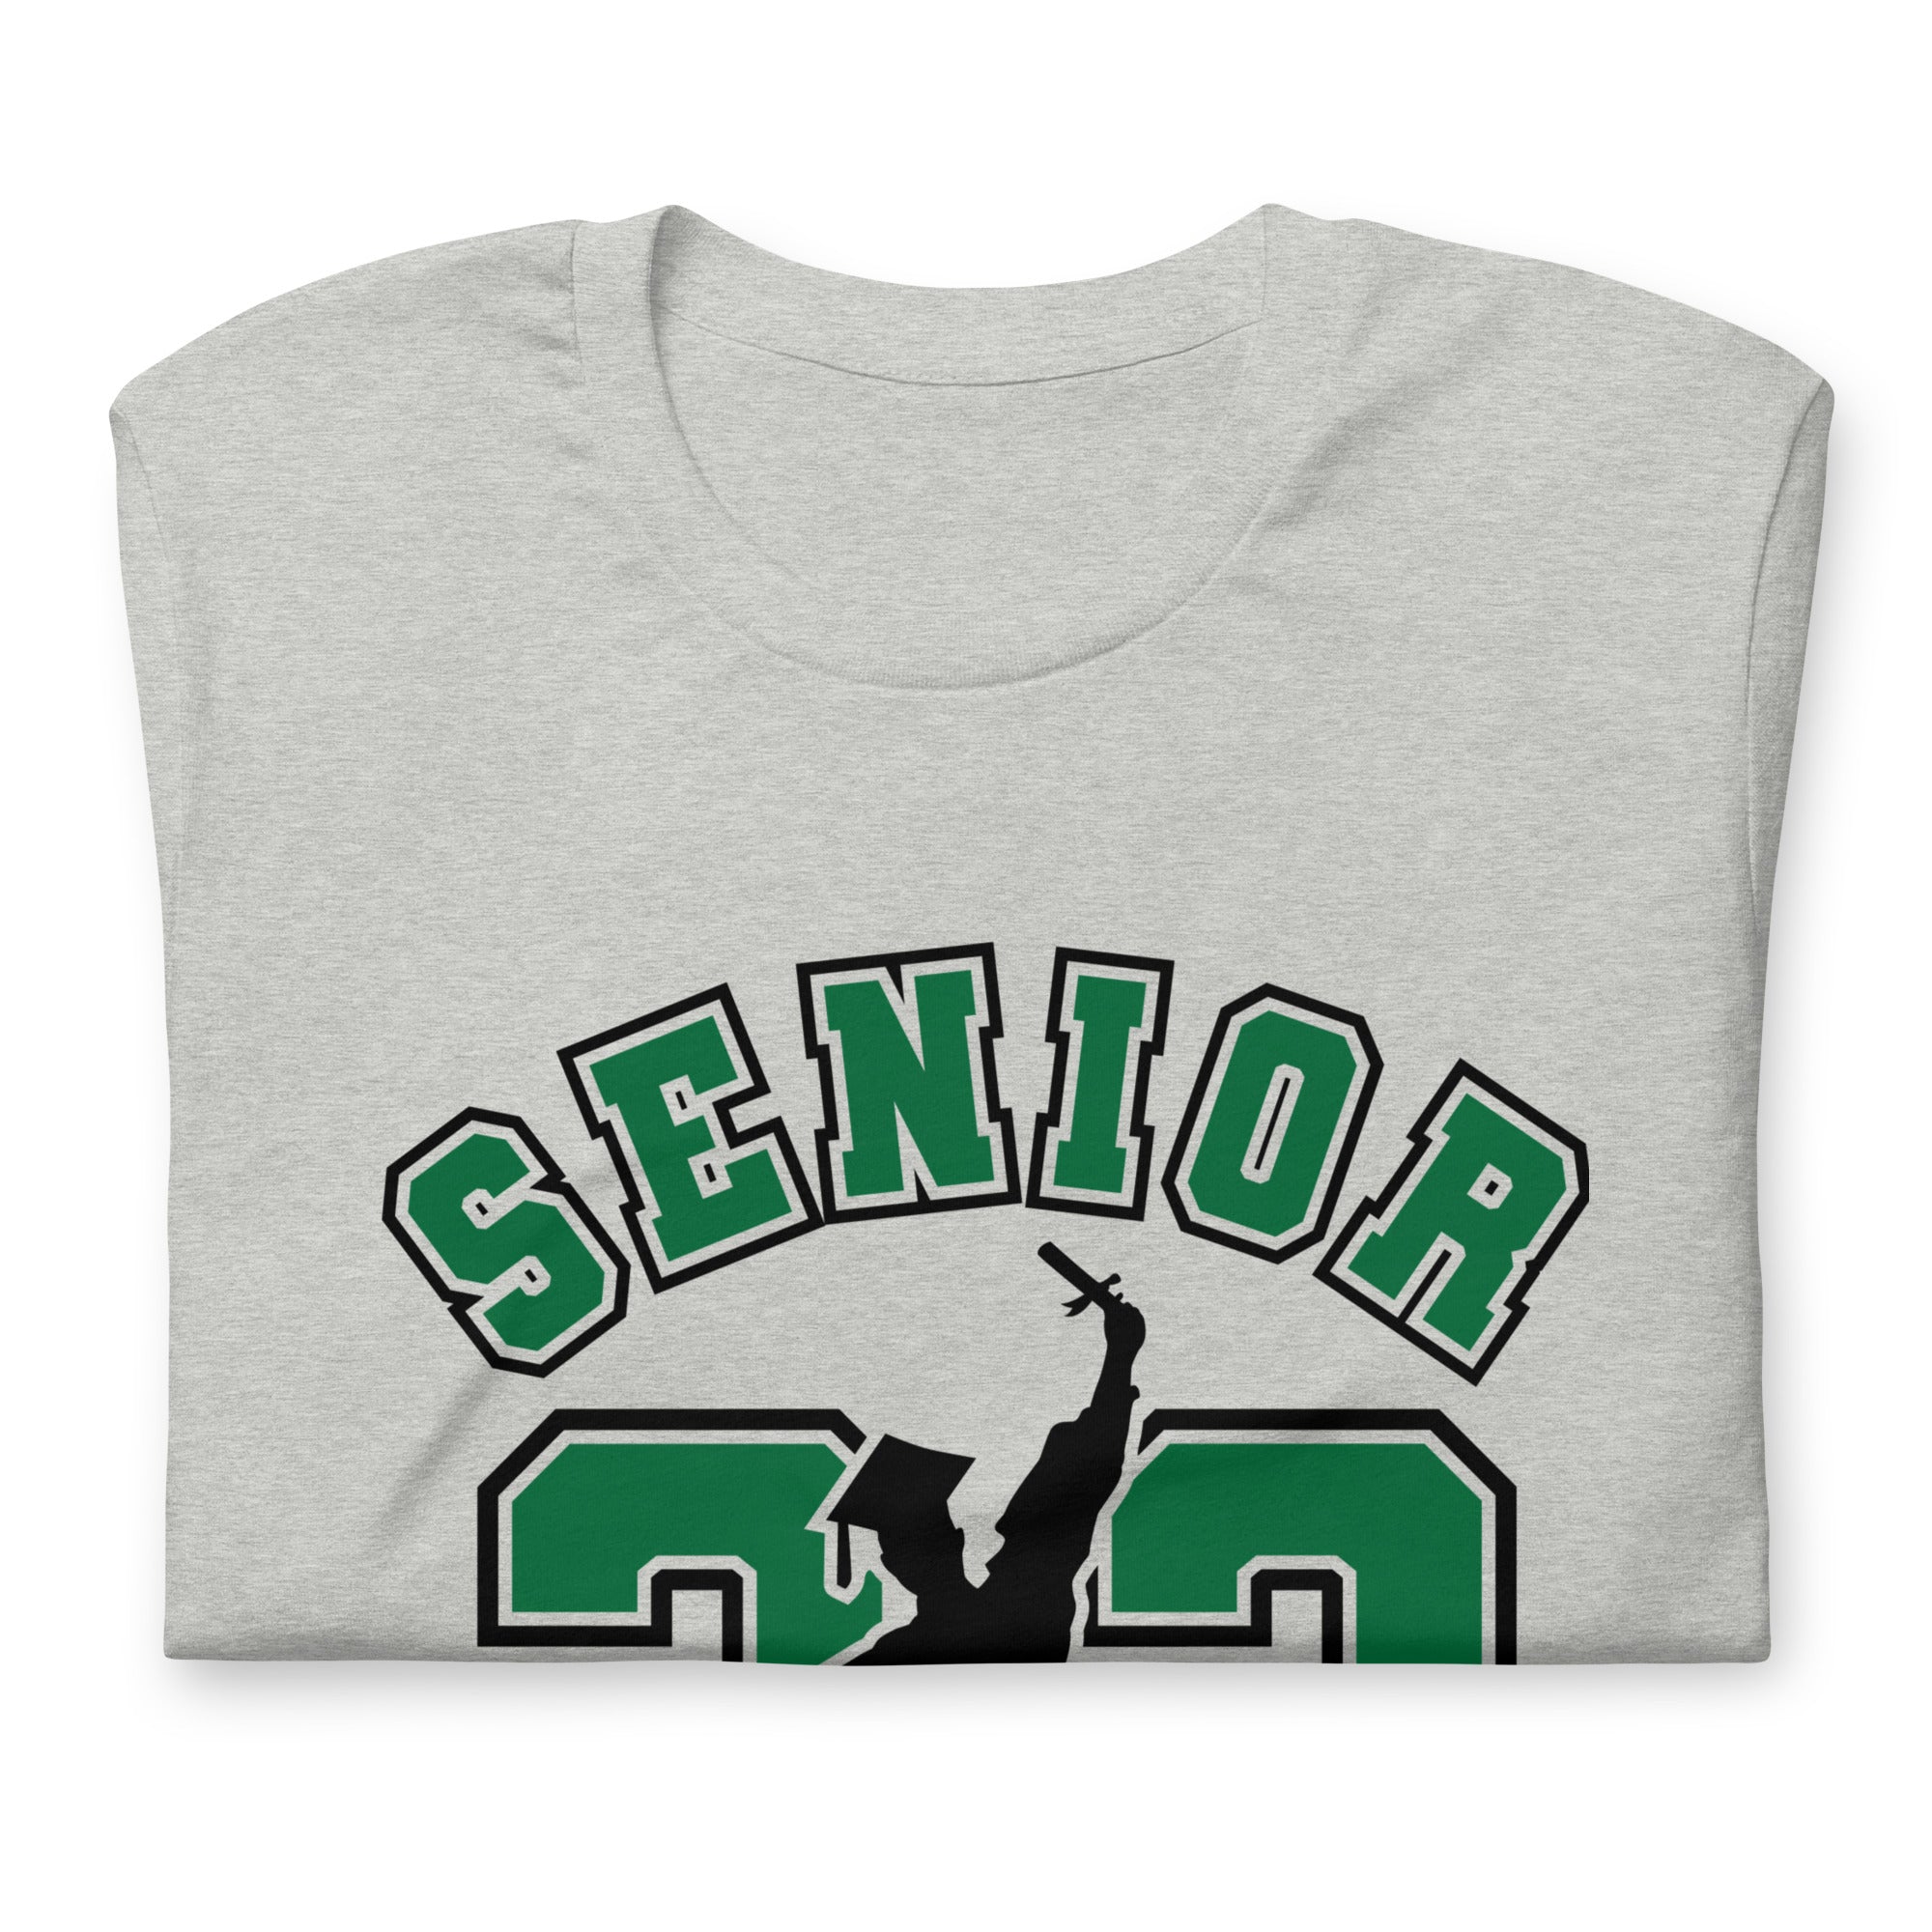 Senior 23 Unisex t-shirt (grn/blk)